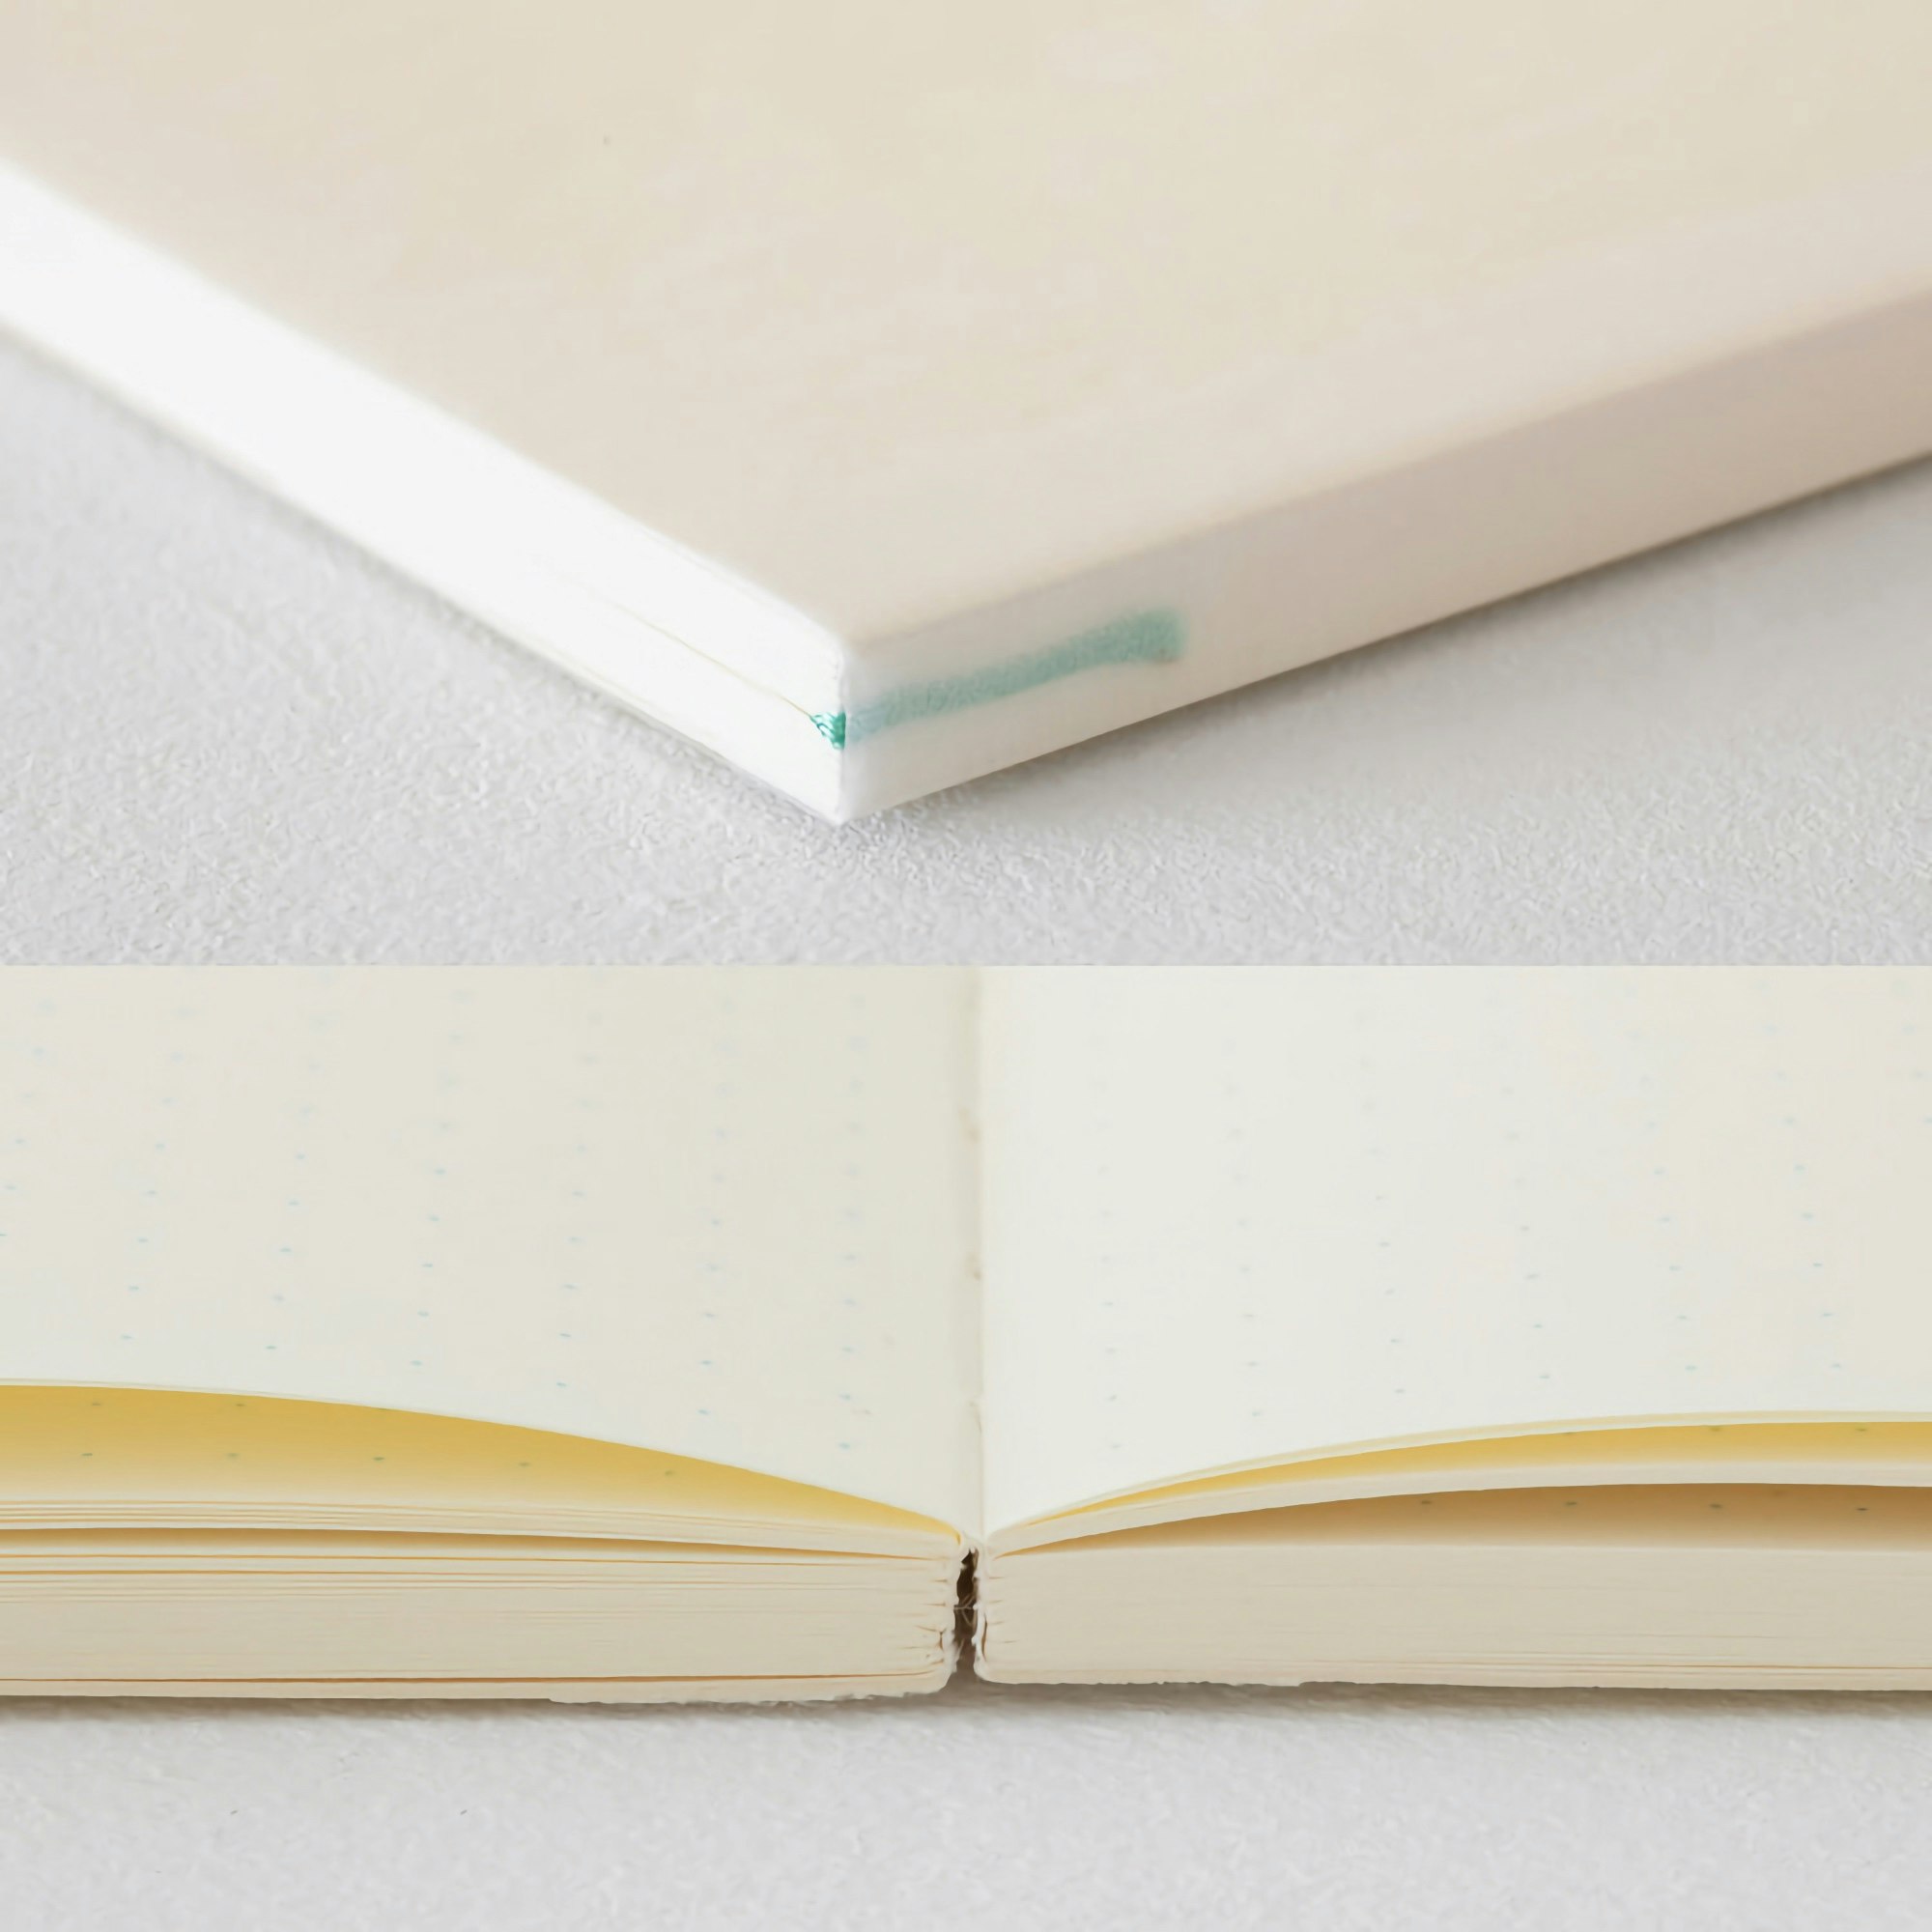 Midori MD Notebook Journal [A5] Dot grid